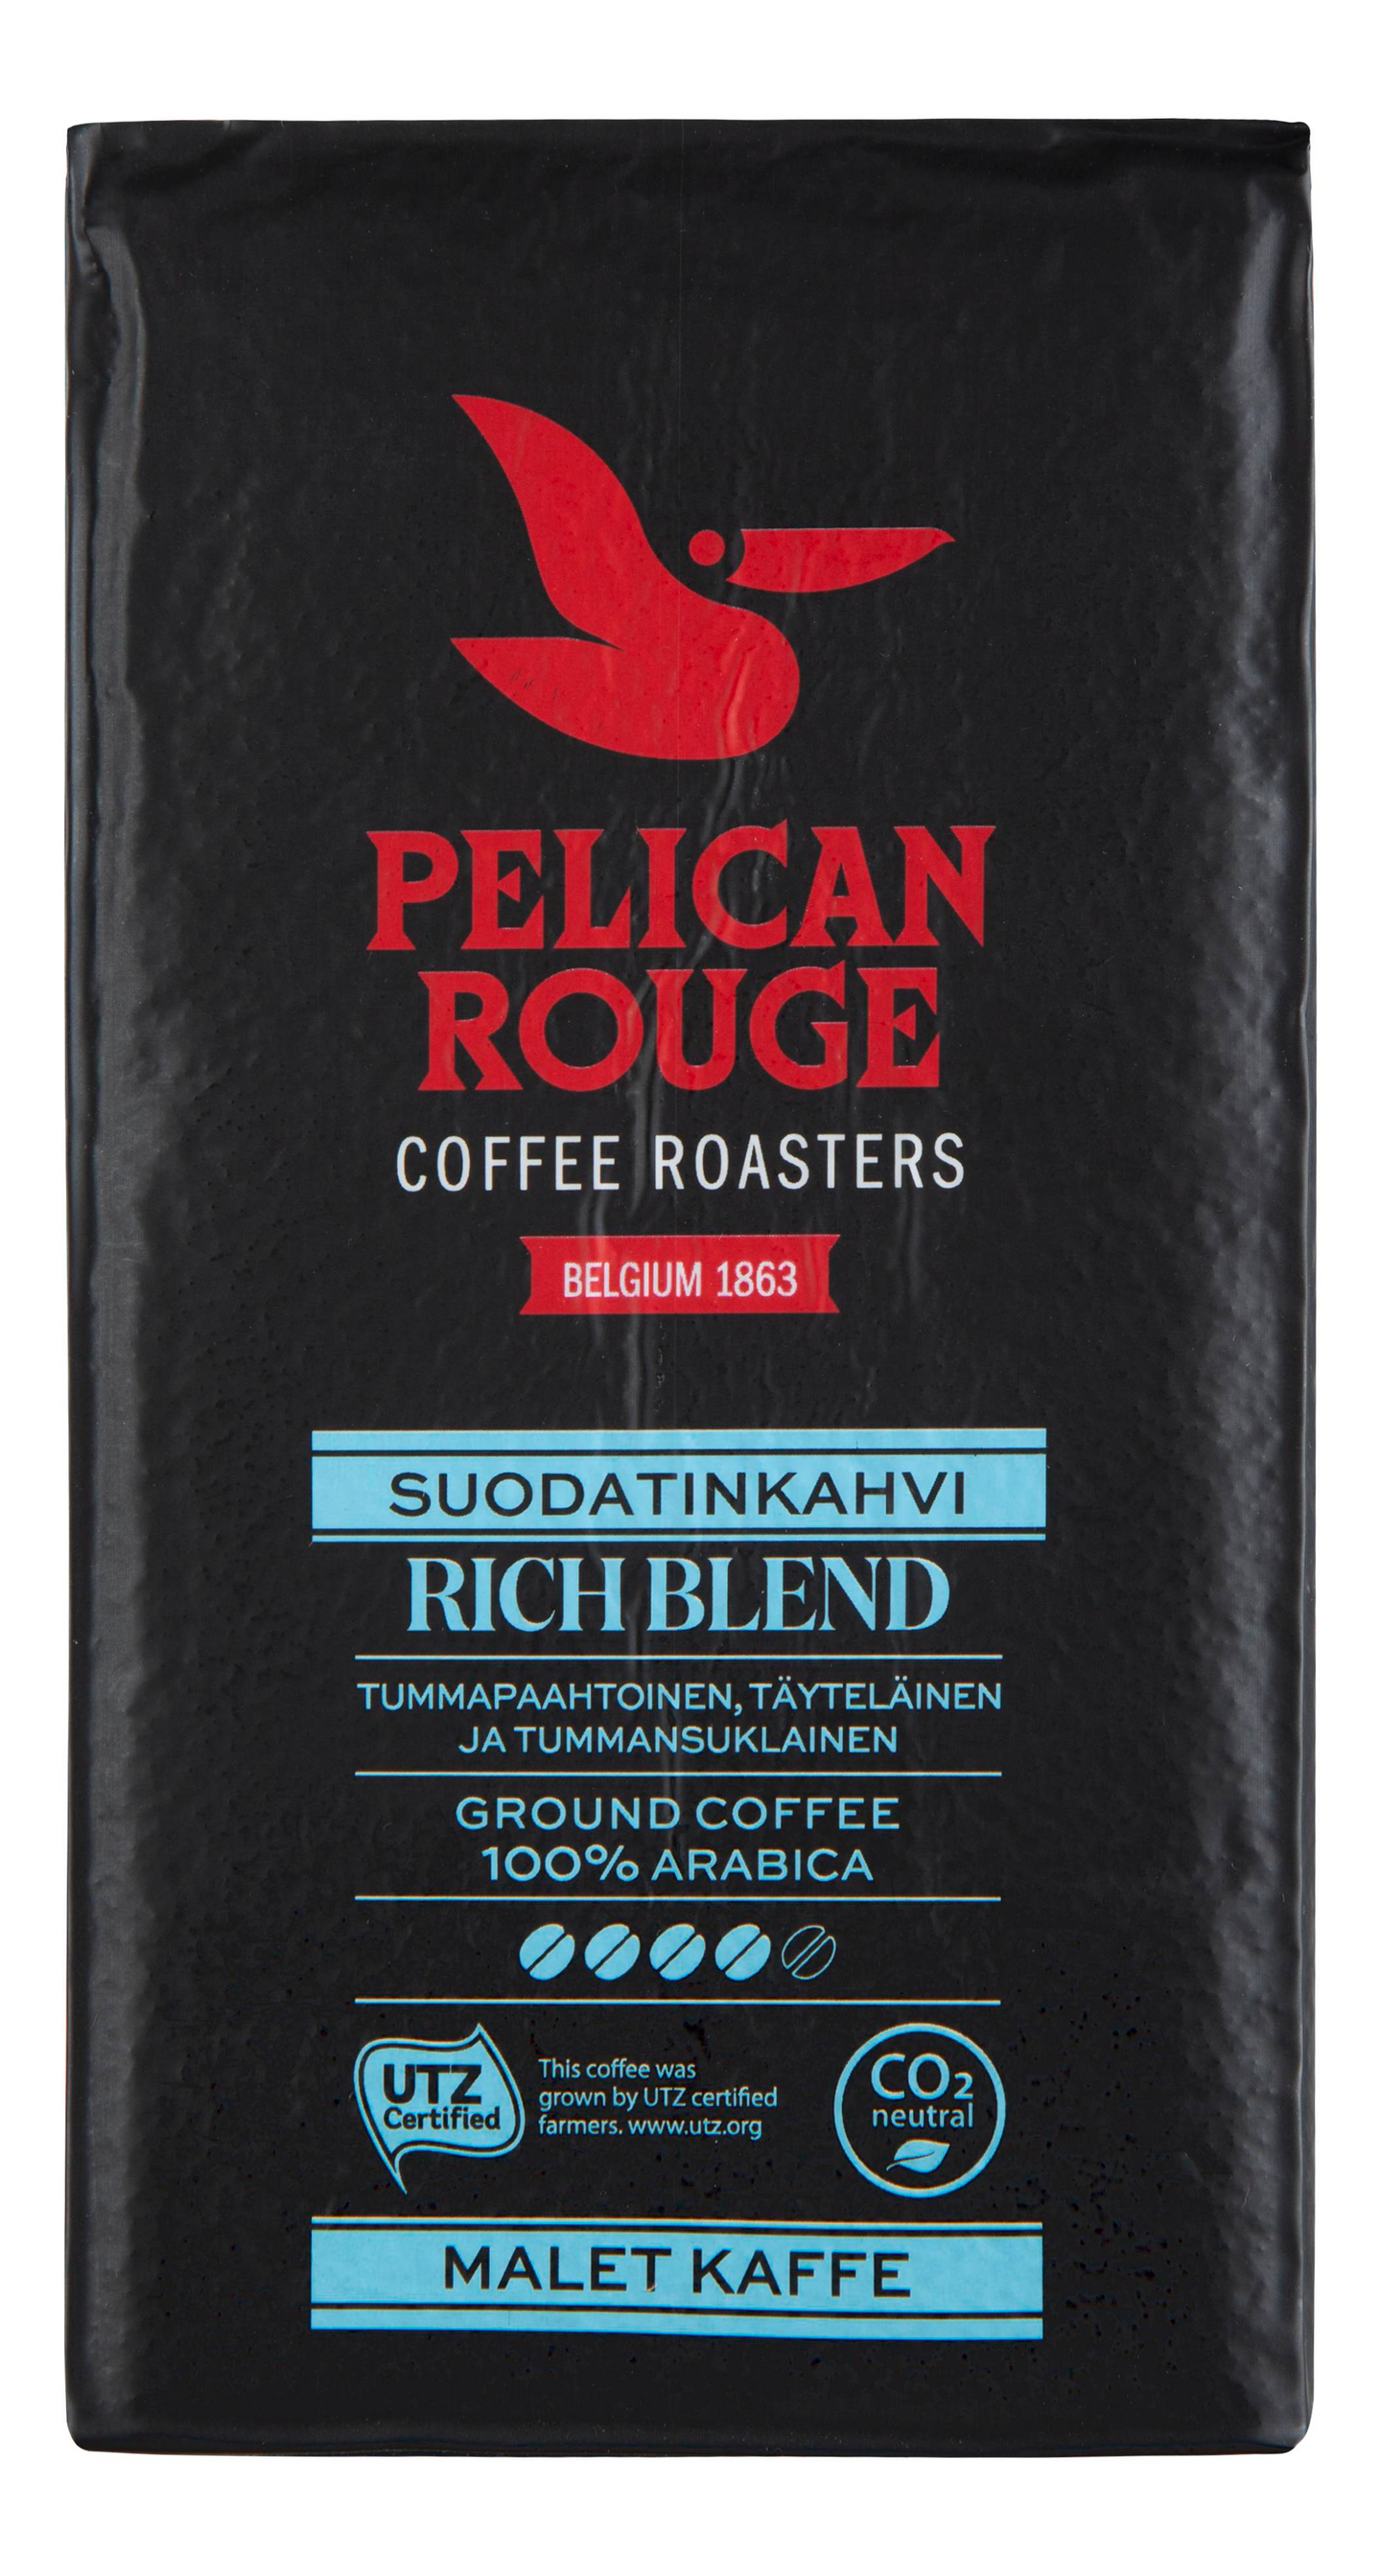 Pelican Rouge suodatinkahvi 500g Rich blend tummapaahtoinen RFA